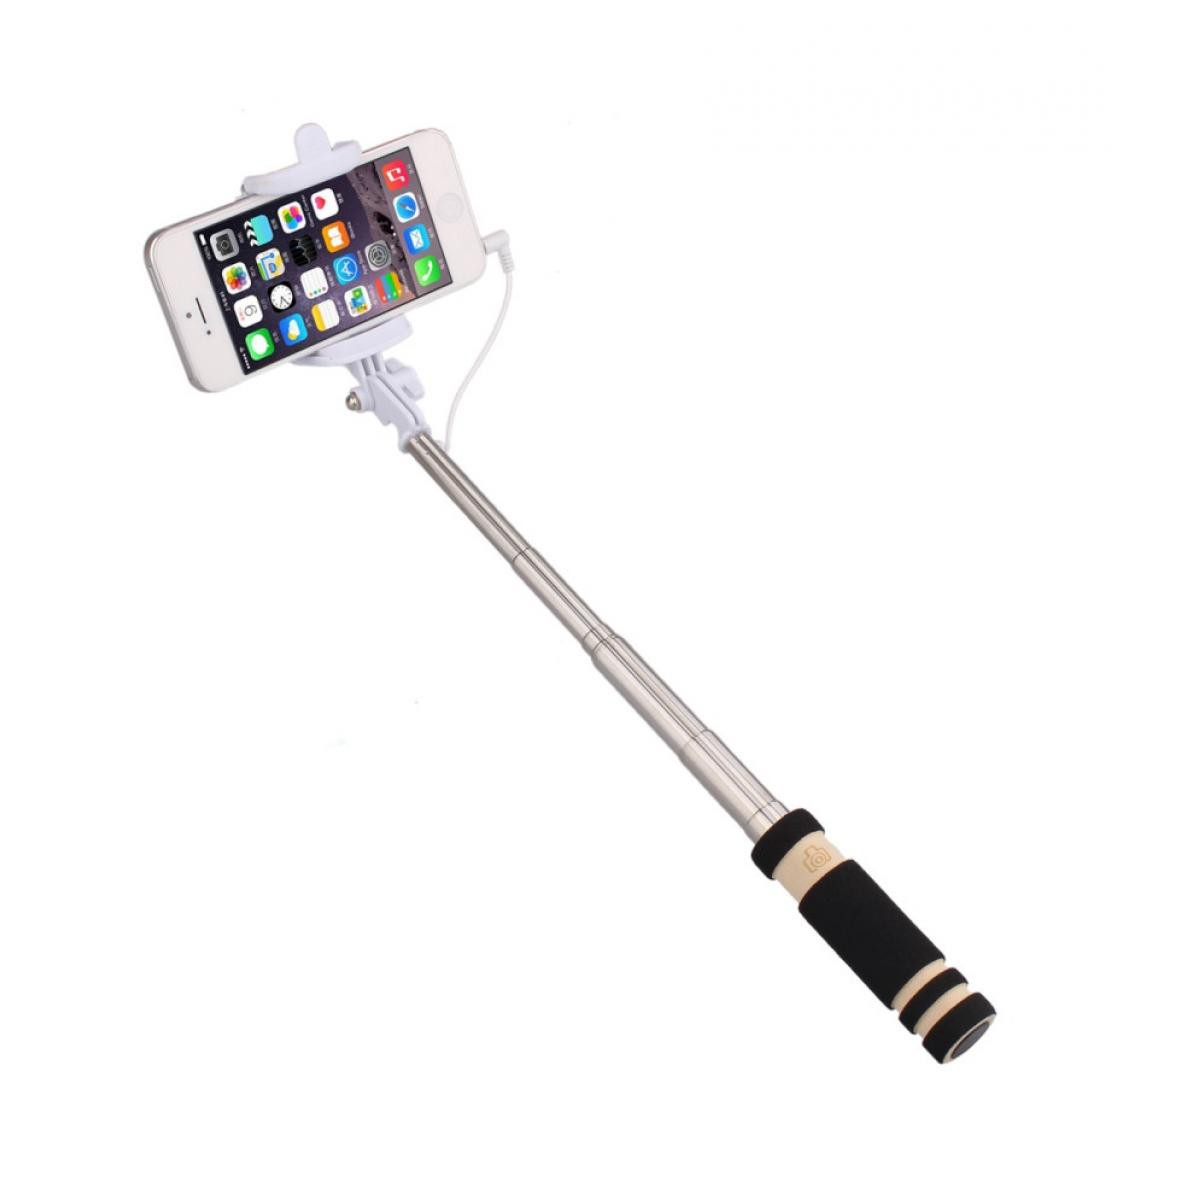 Shot - Mini Perche Selfie pour SAMSUNG Galaxy J6+ Smartphone avec Cable Jack Selfie Stick Android IOS Reglable Bouton Photo (NOIR) - Autres accessoires smartphone